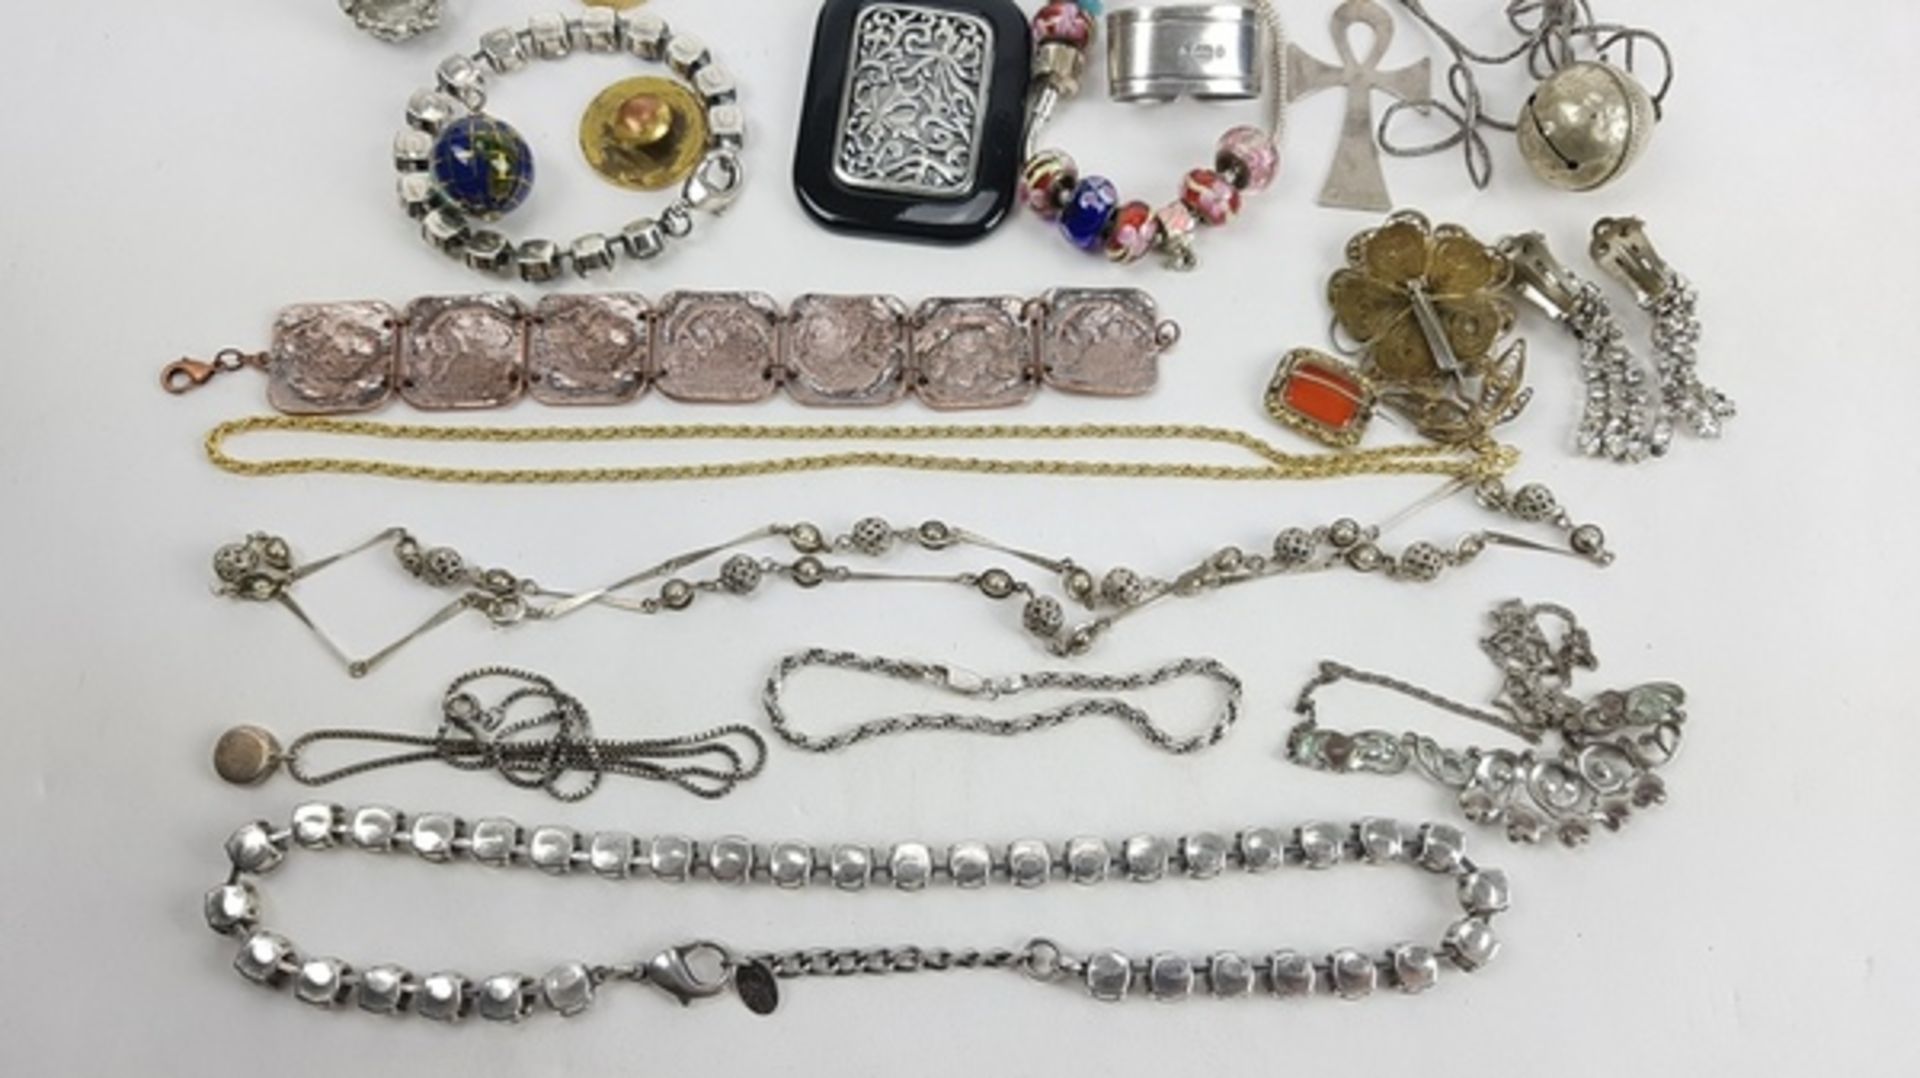 (Sieraden) Diverse materialen, lot van 34 stuks diverse sieraden, 20e eeuwDiverse materialen w - Bild 4 aus 15